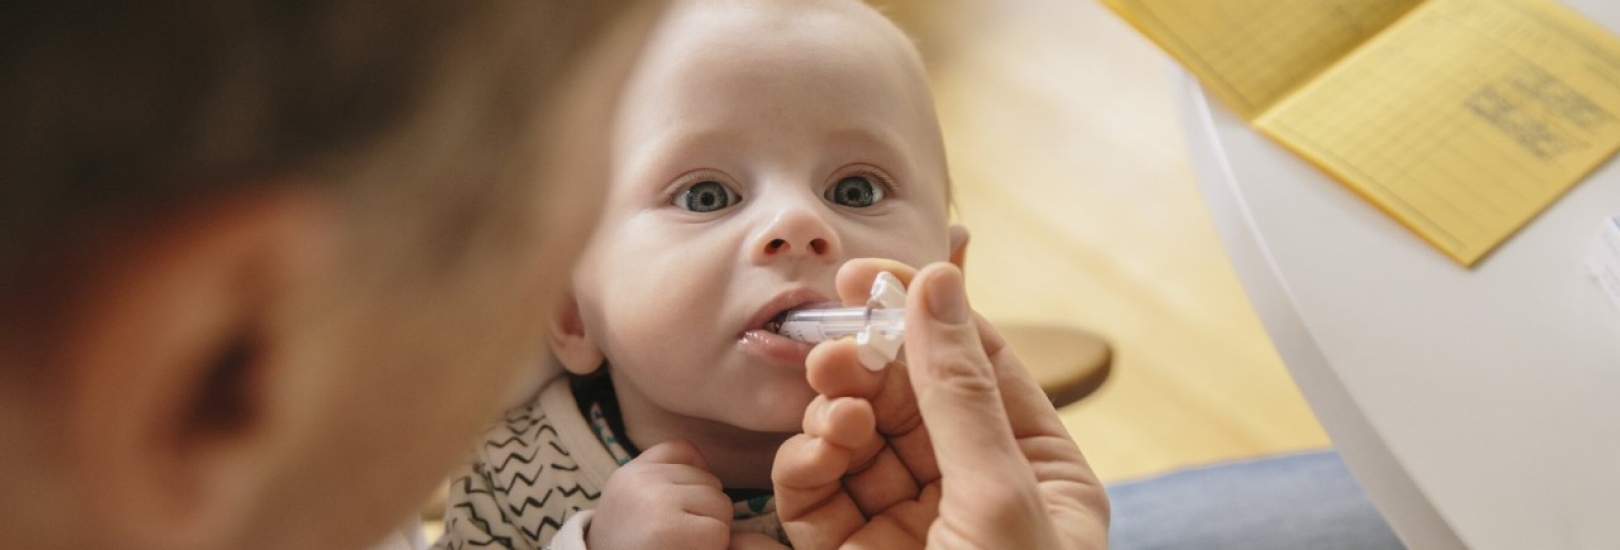 Impfungen im Säuglingsalter